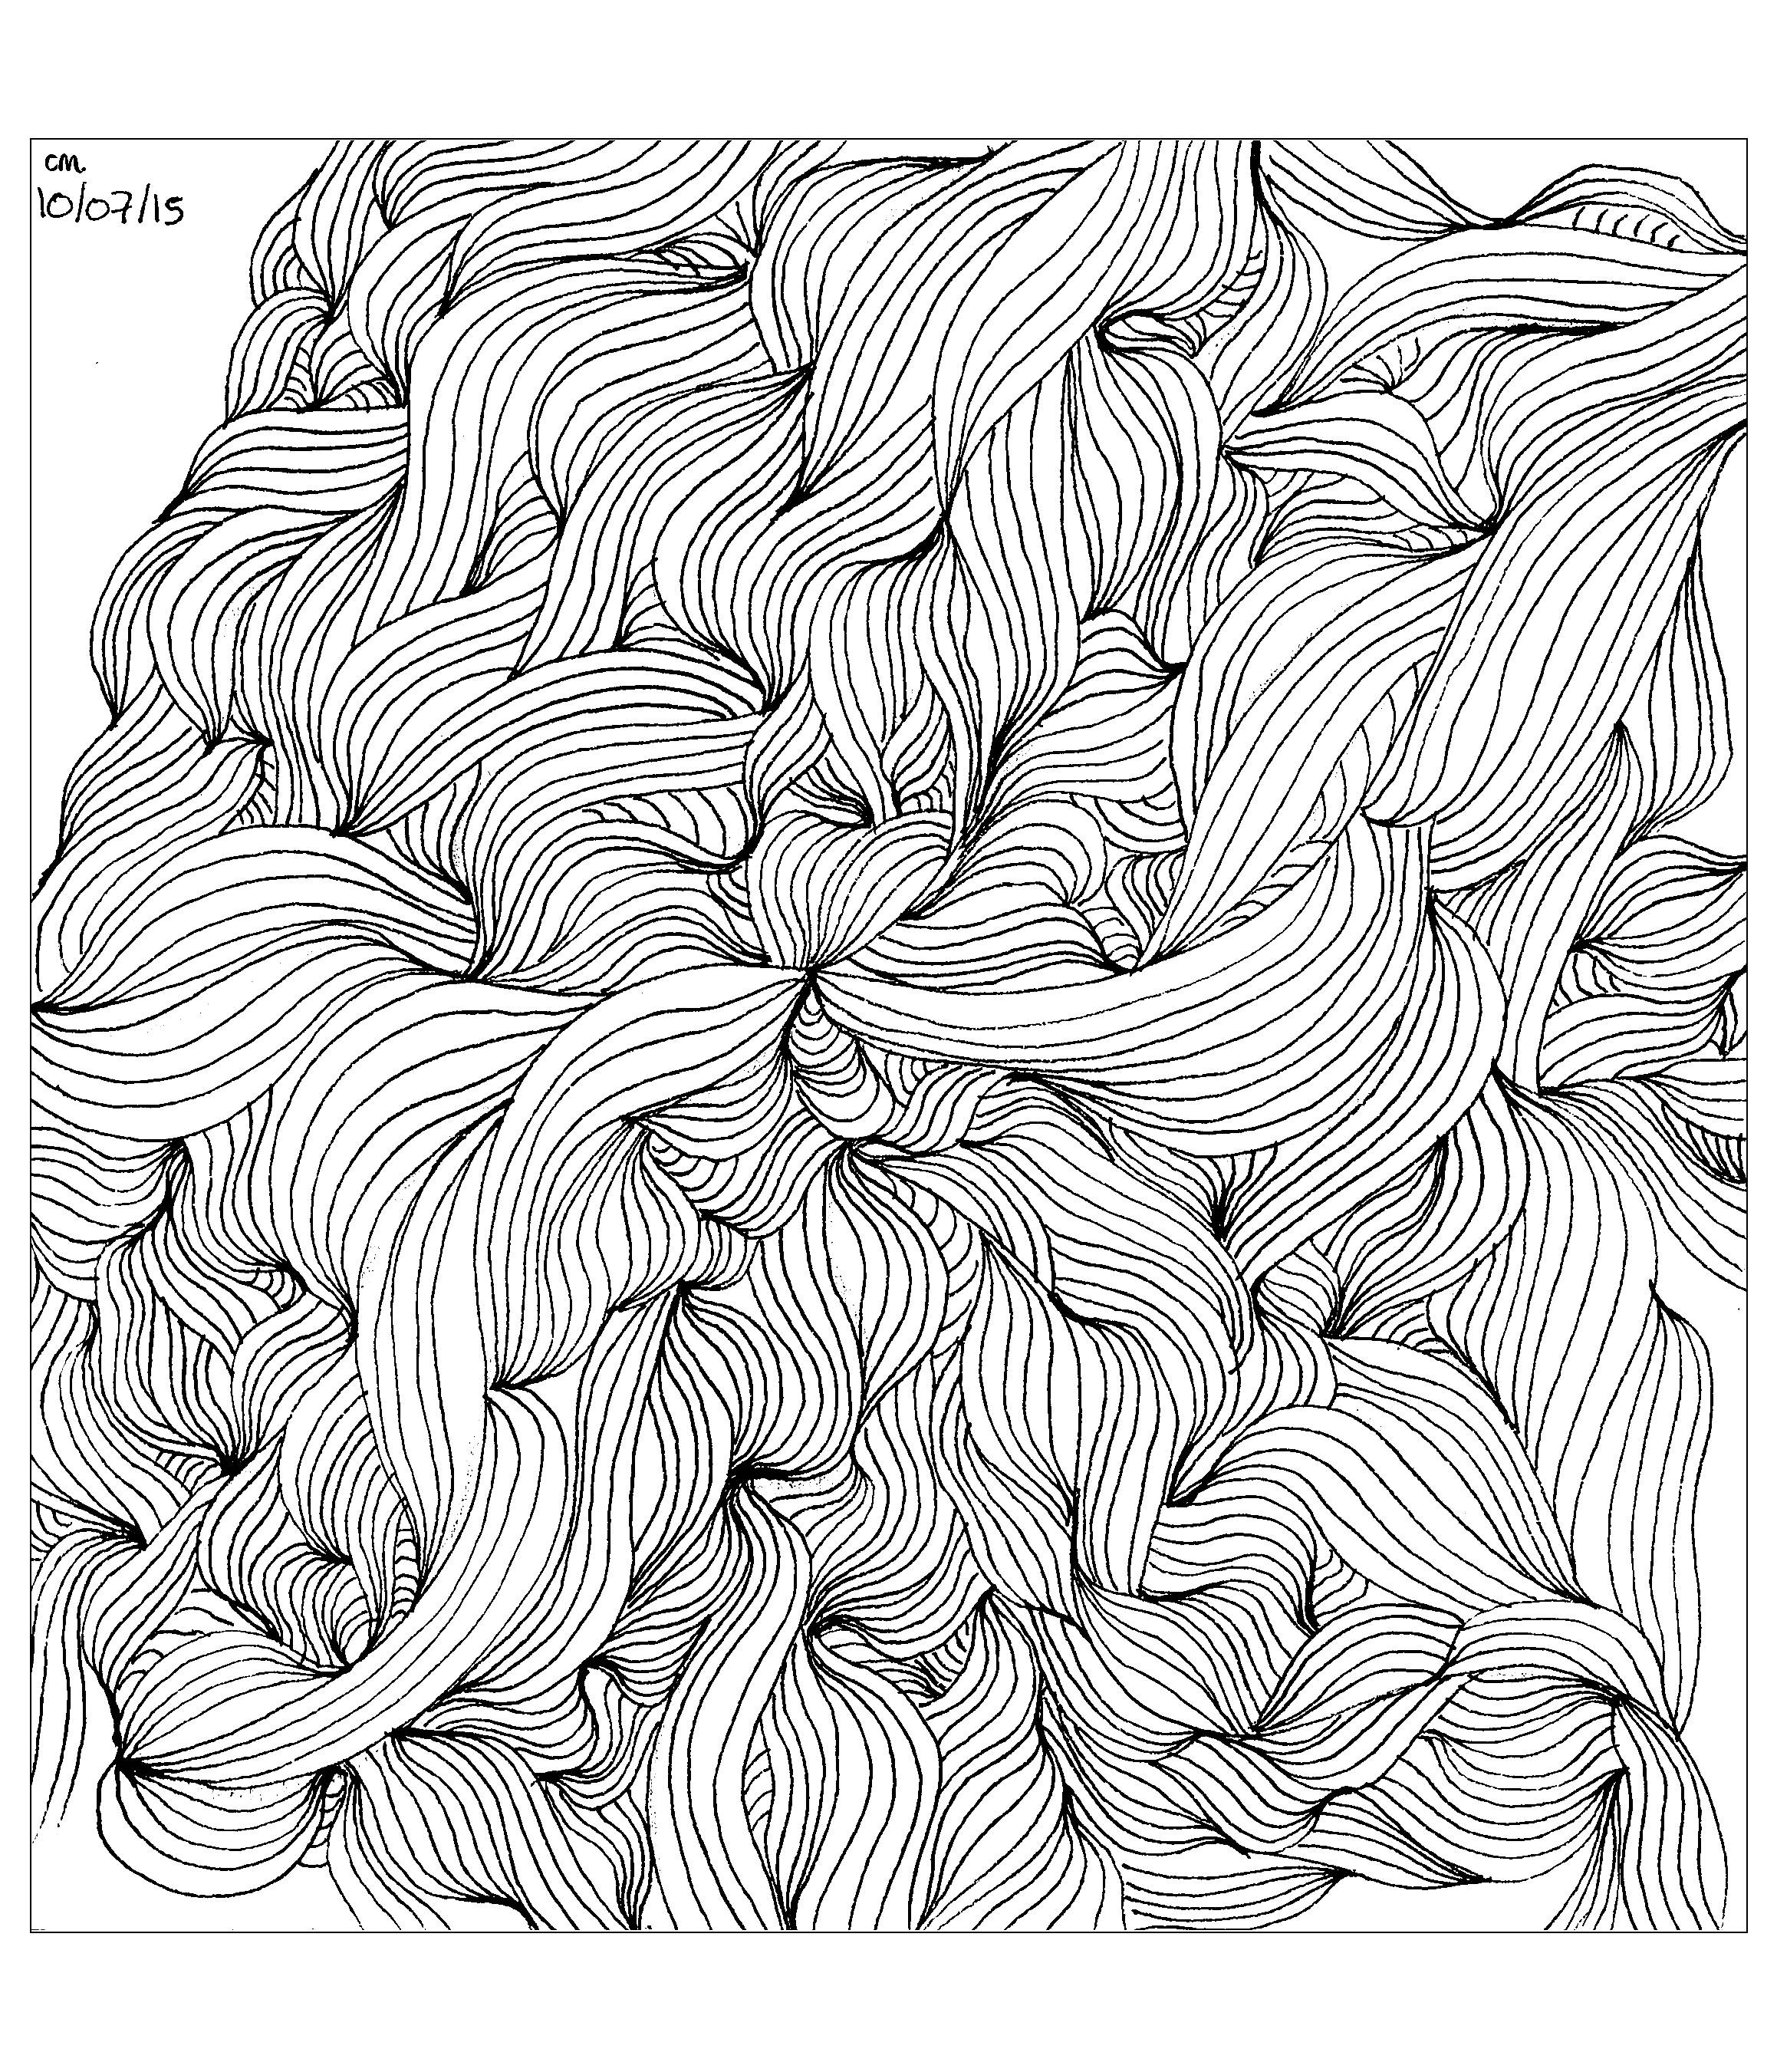 Dessin original Zentangle, à colorier, par Cathy M